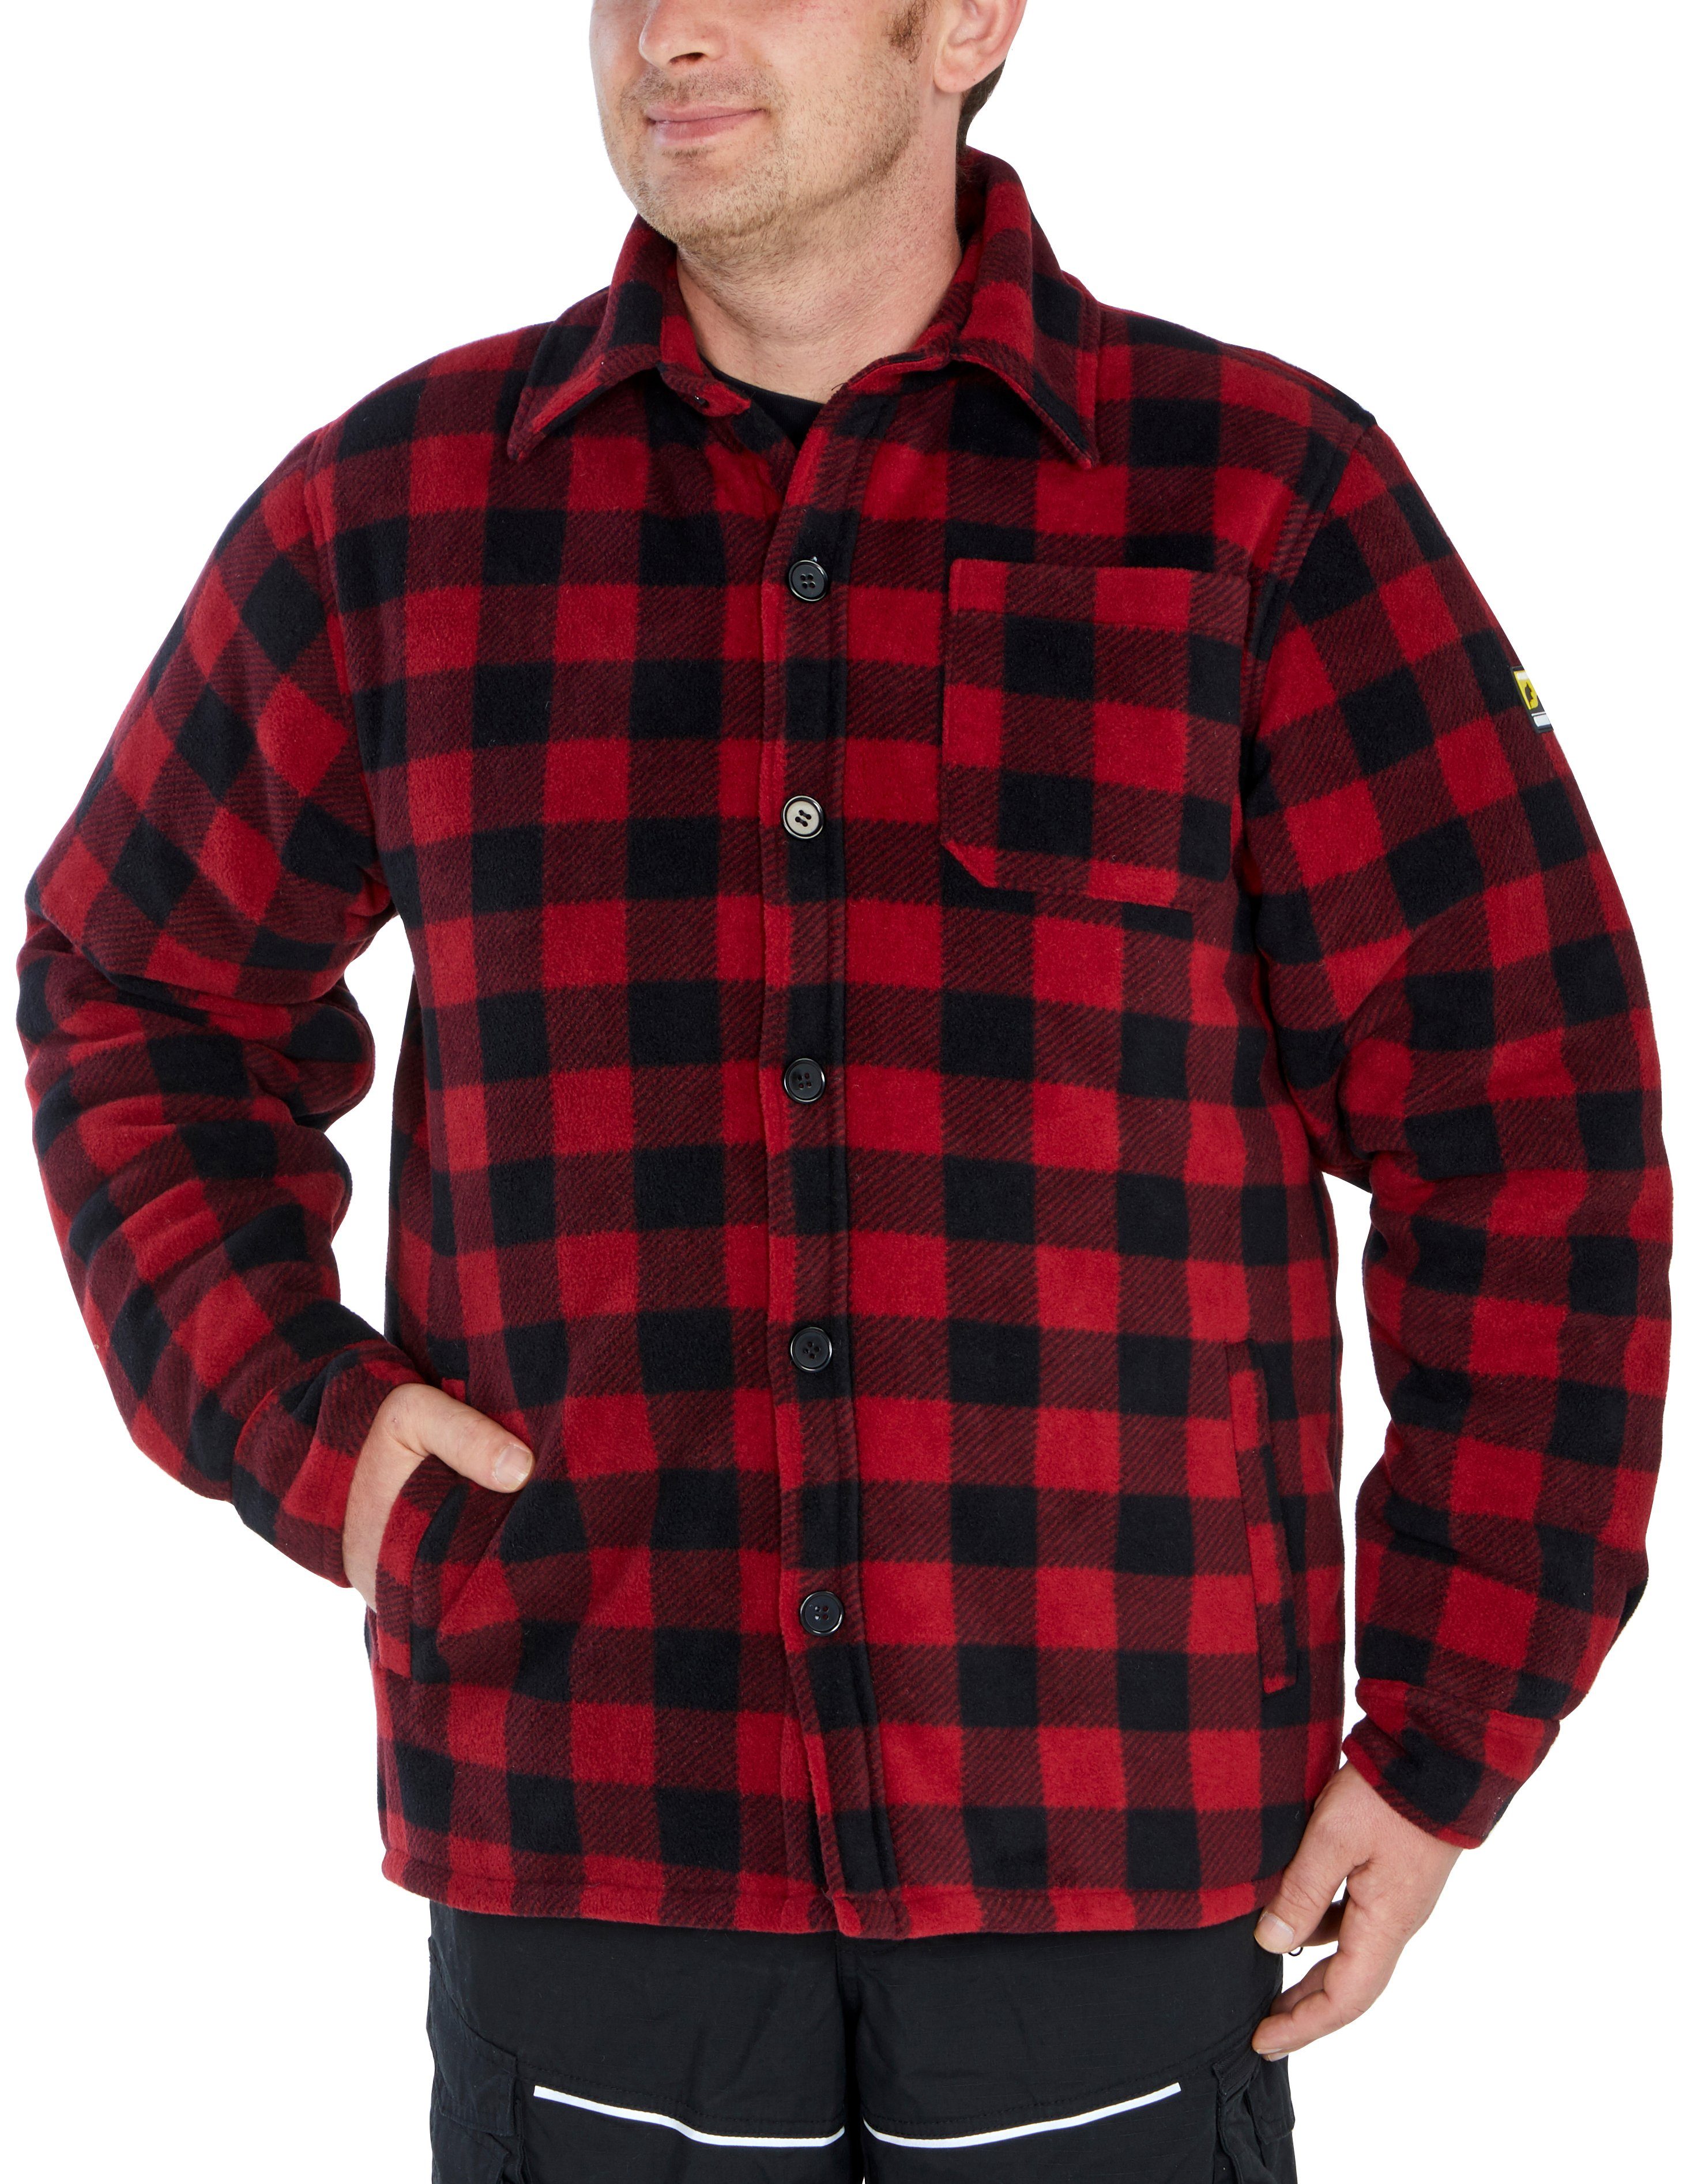 Flanellstoff (als 5 mit oder Taschen, offen rot-schwarz Rücken, Jacke zugeknöpft mit Flanellhemd Country gefüttert, warm zu tragen) Northern verlängertem Hemd